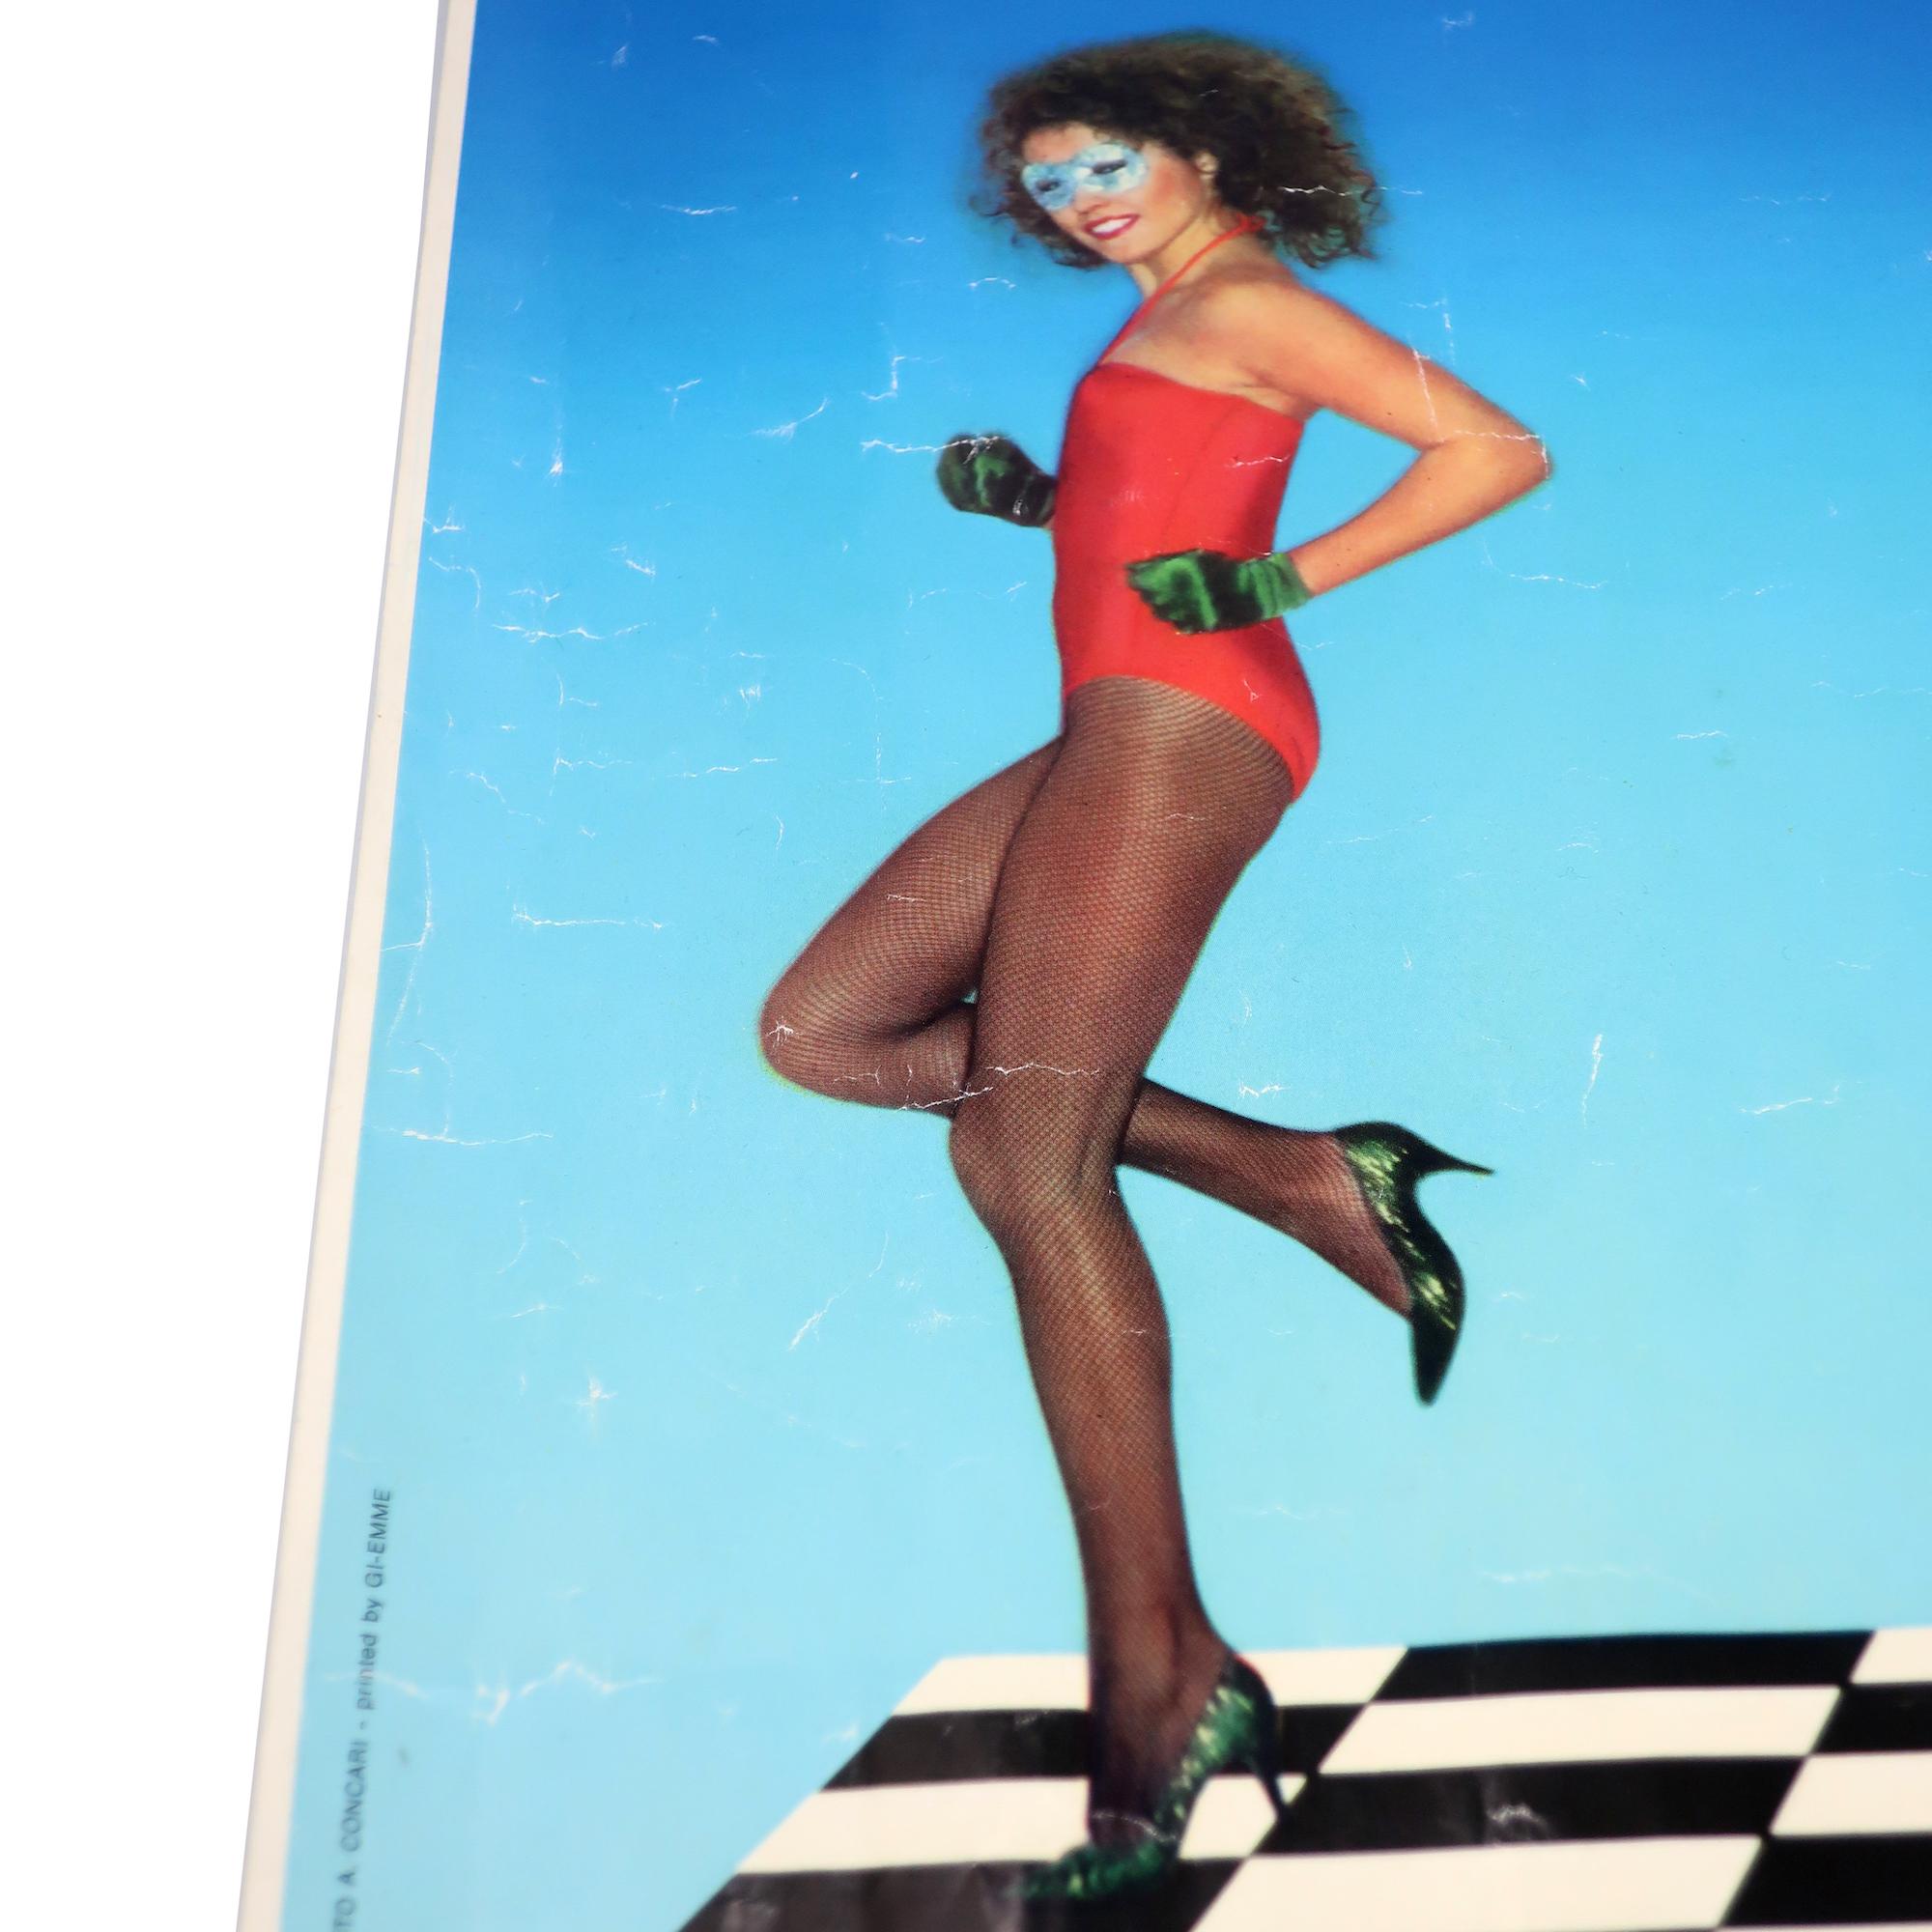 Ein altes und seltenes Fiorucci-Plakat, das vier schöne Frauen in Strumpfhosen und Trikots zeigt, die über ein schwarz-weißes Schachbrett vor einem himmelblauen Hintergrund tanzen, mit dem Markennamen in kontrastierenden schwarzen, weißen und roten